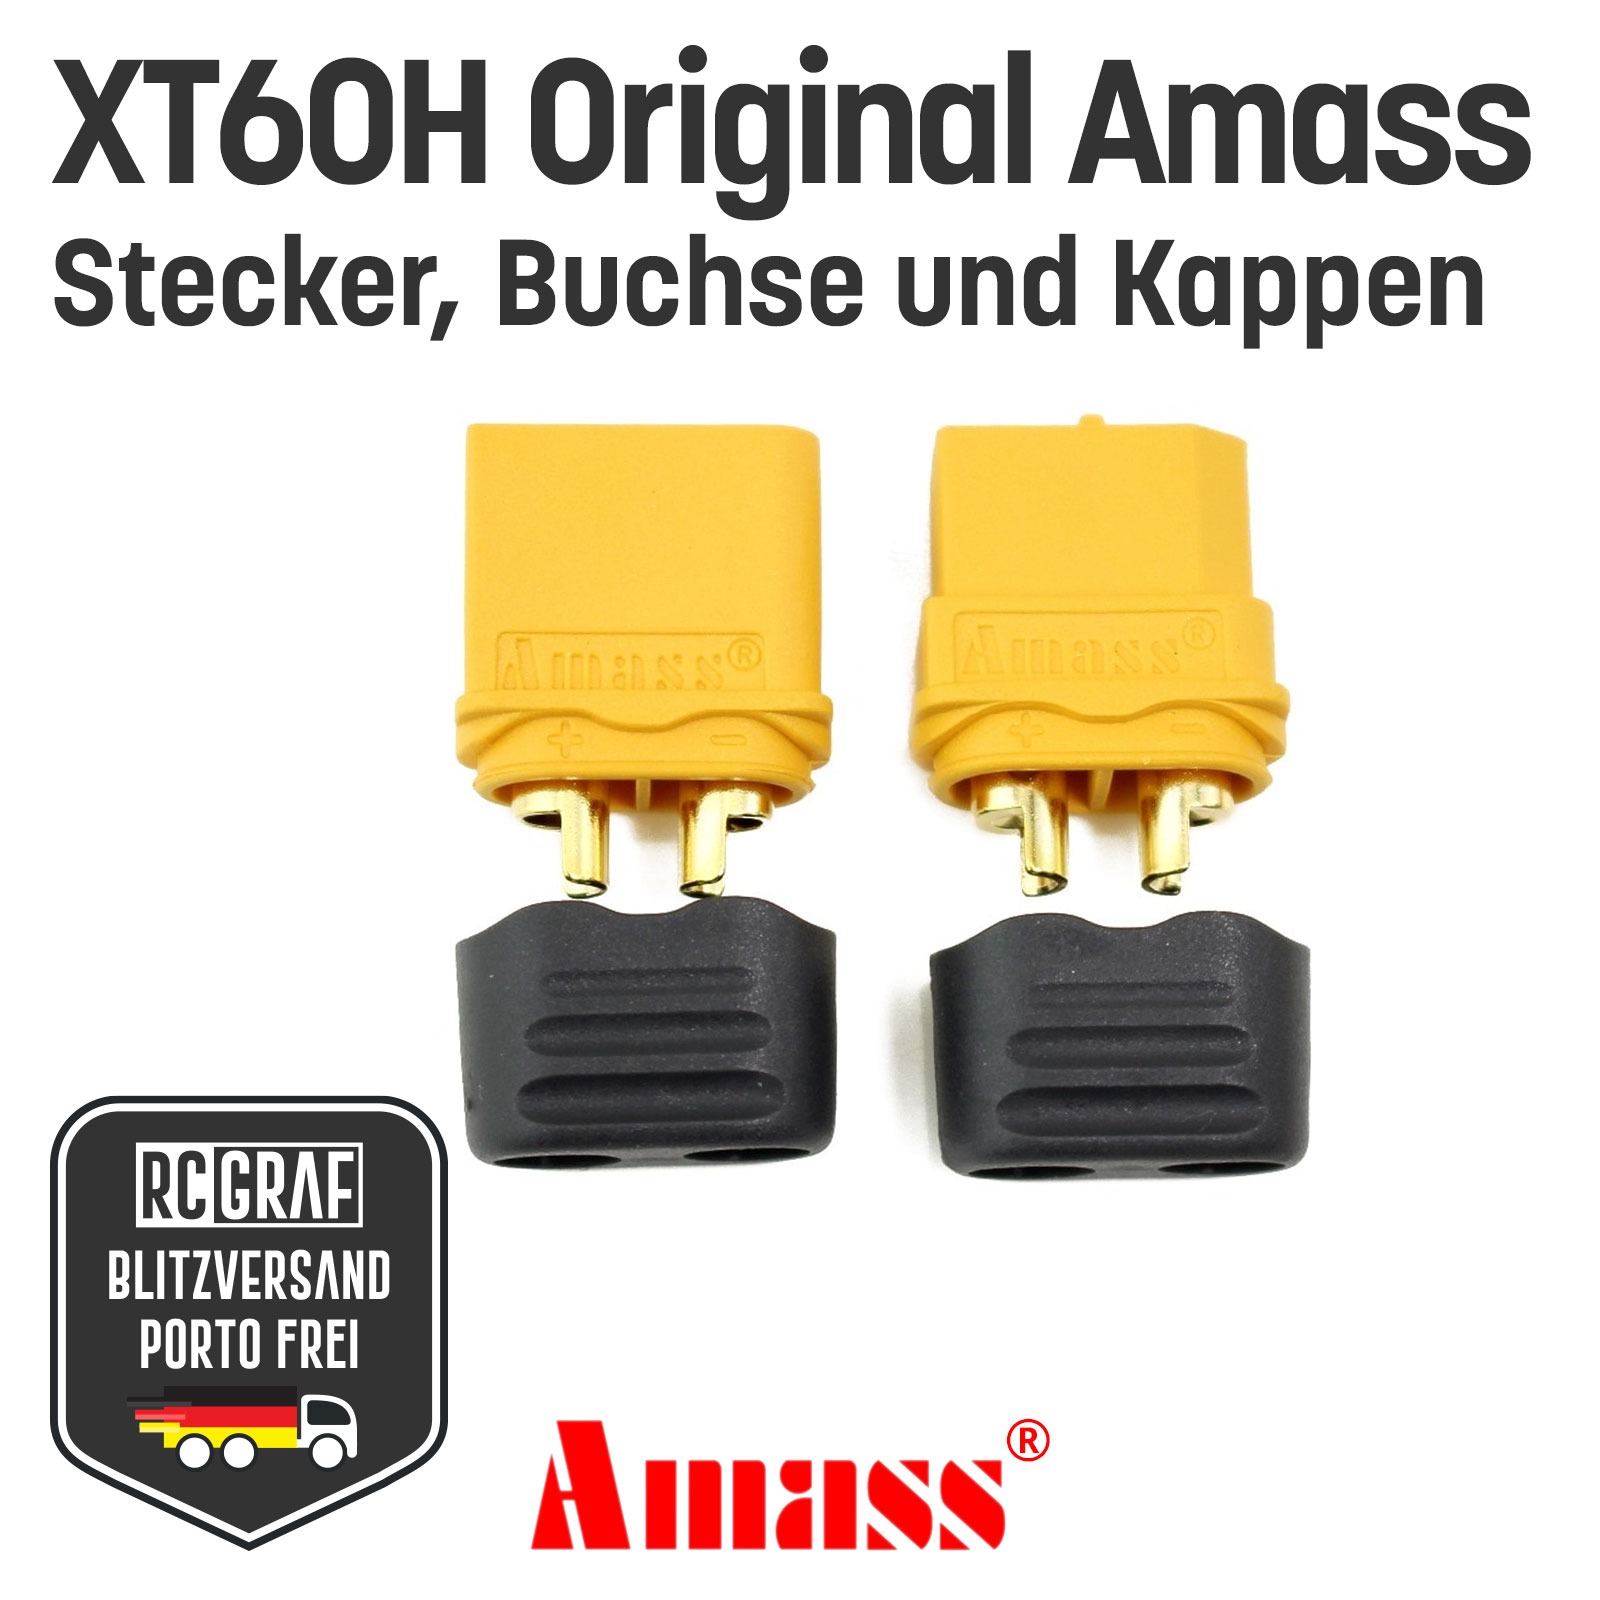 1 Paar XT60H Original Amass XT60 Stecker Buchse Gelb 2